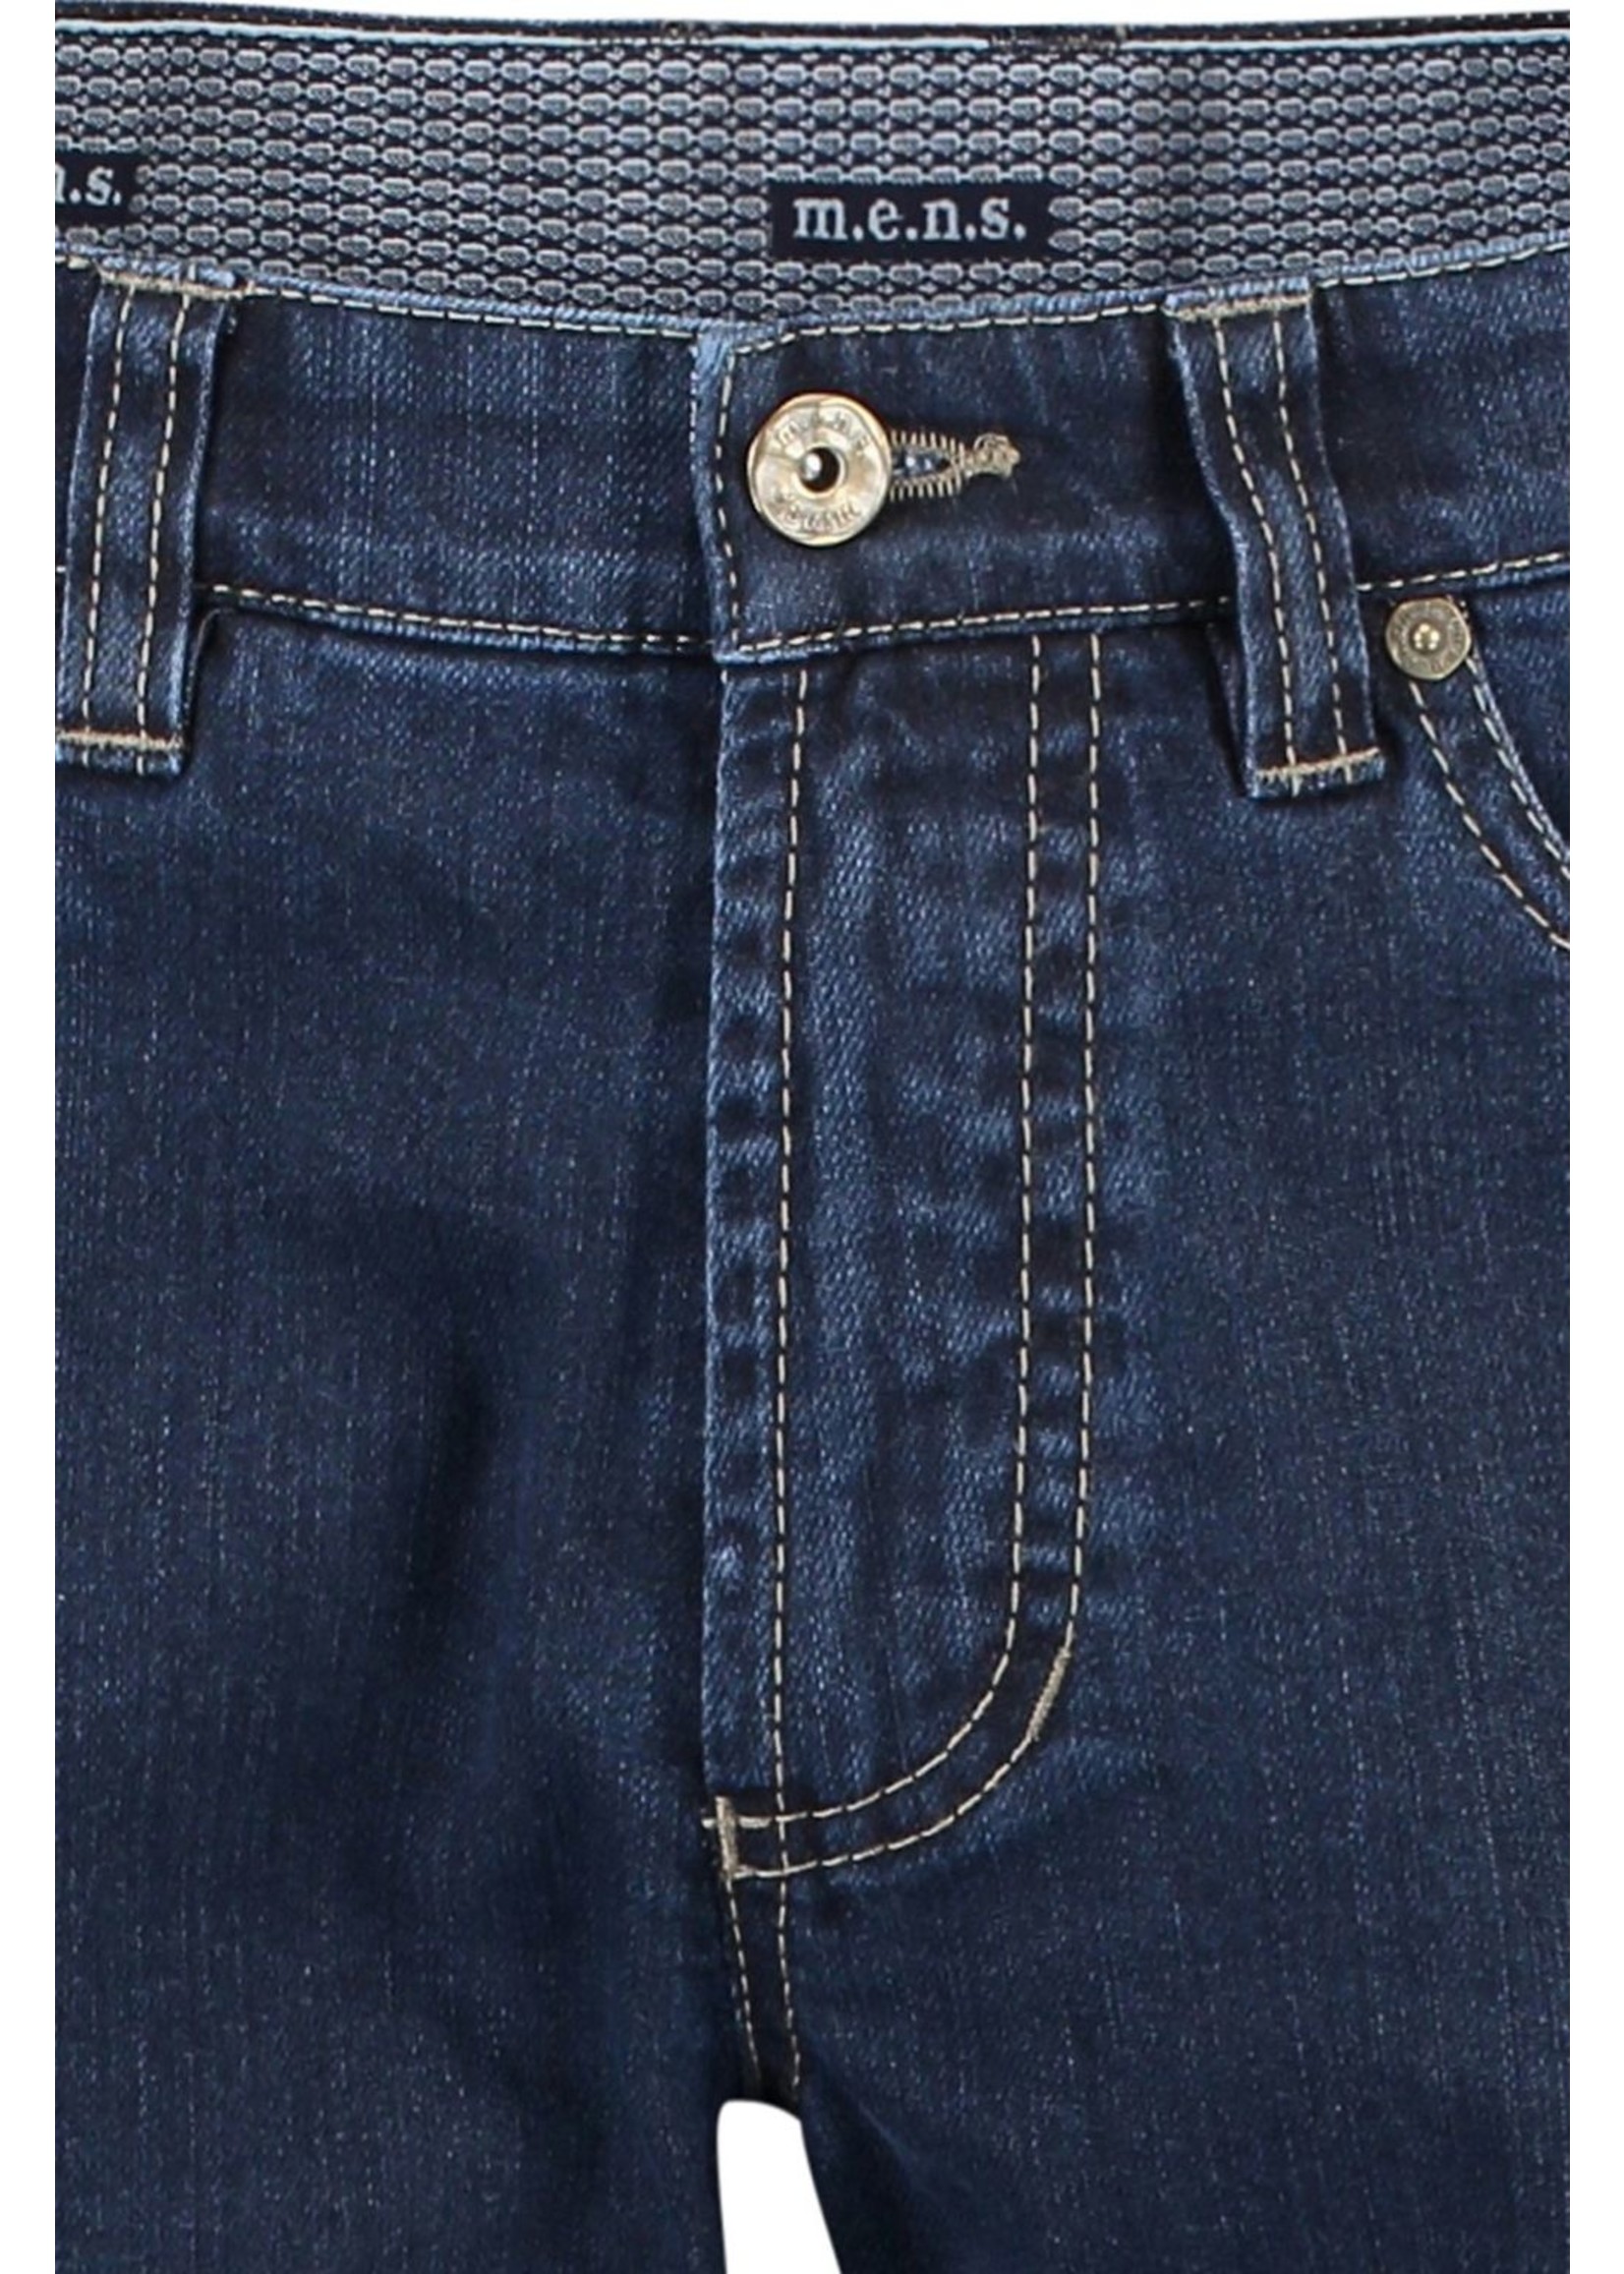 M.E.N.S. Detroit five pocket jeans